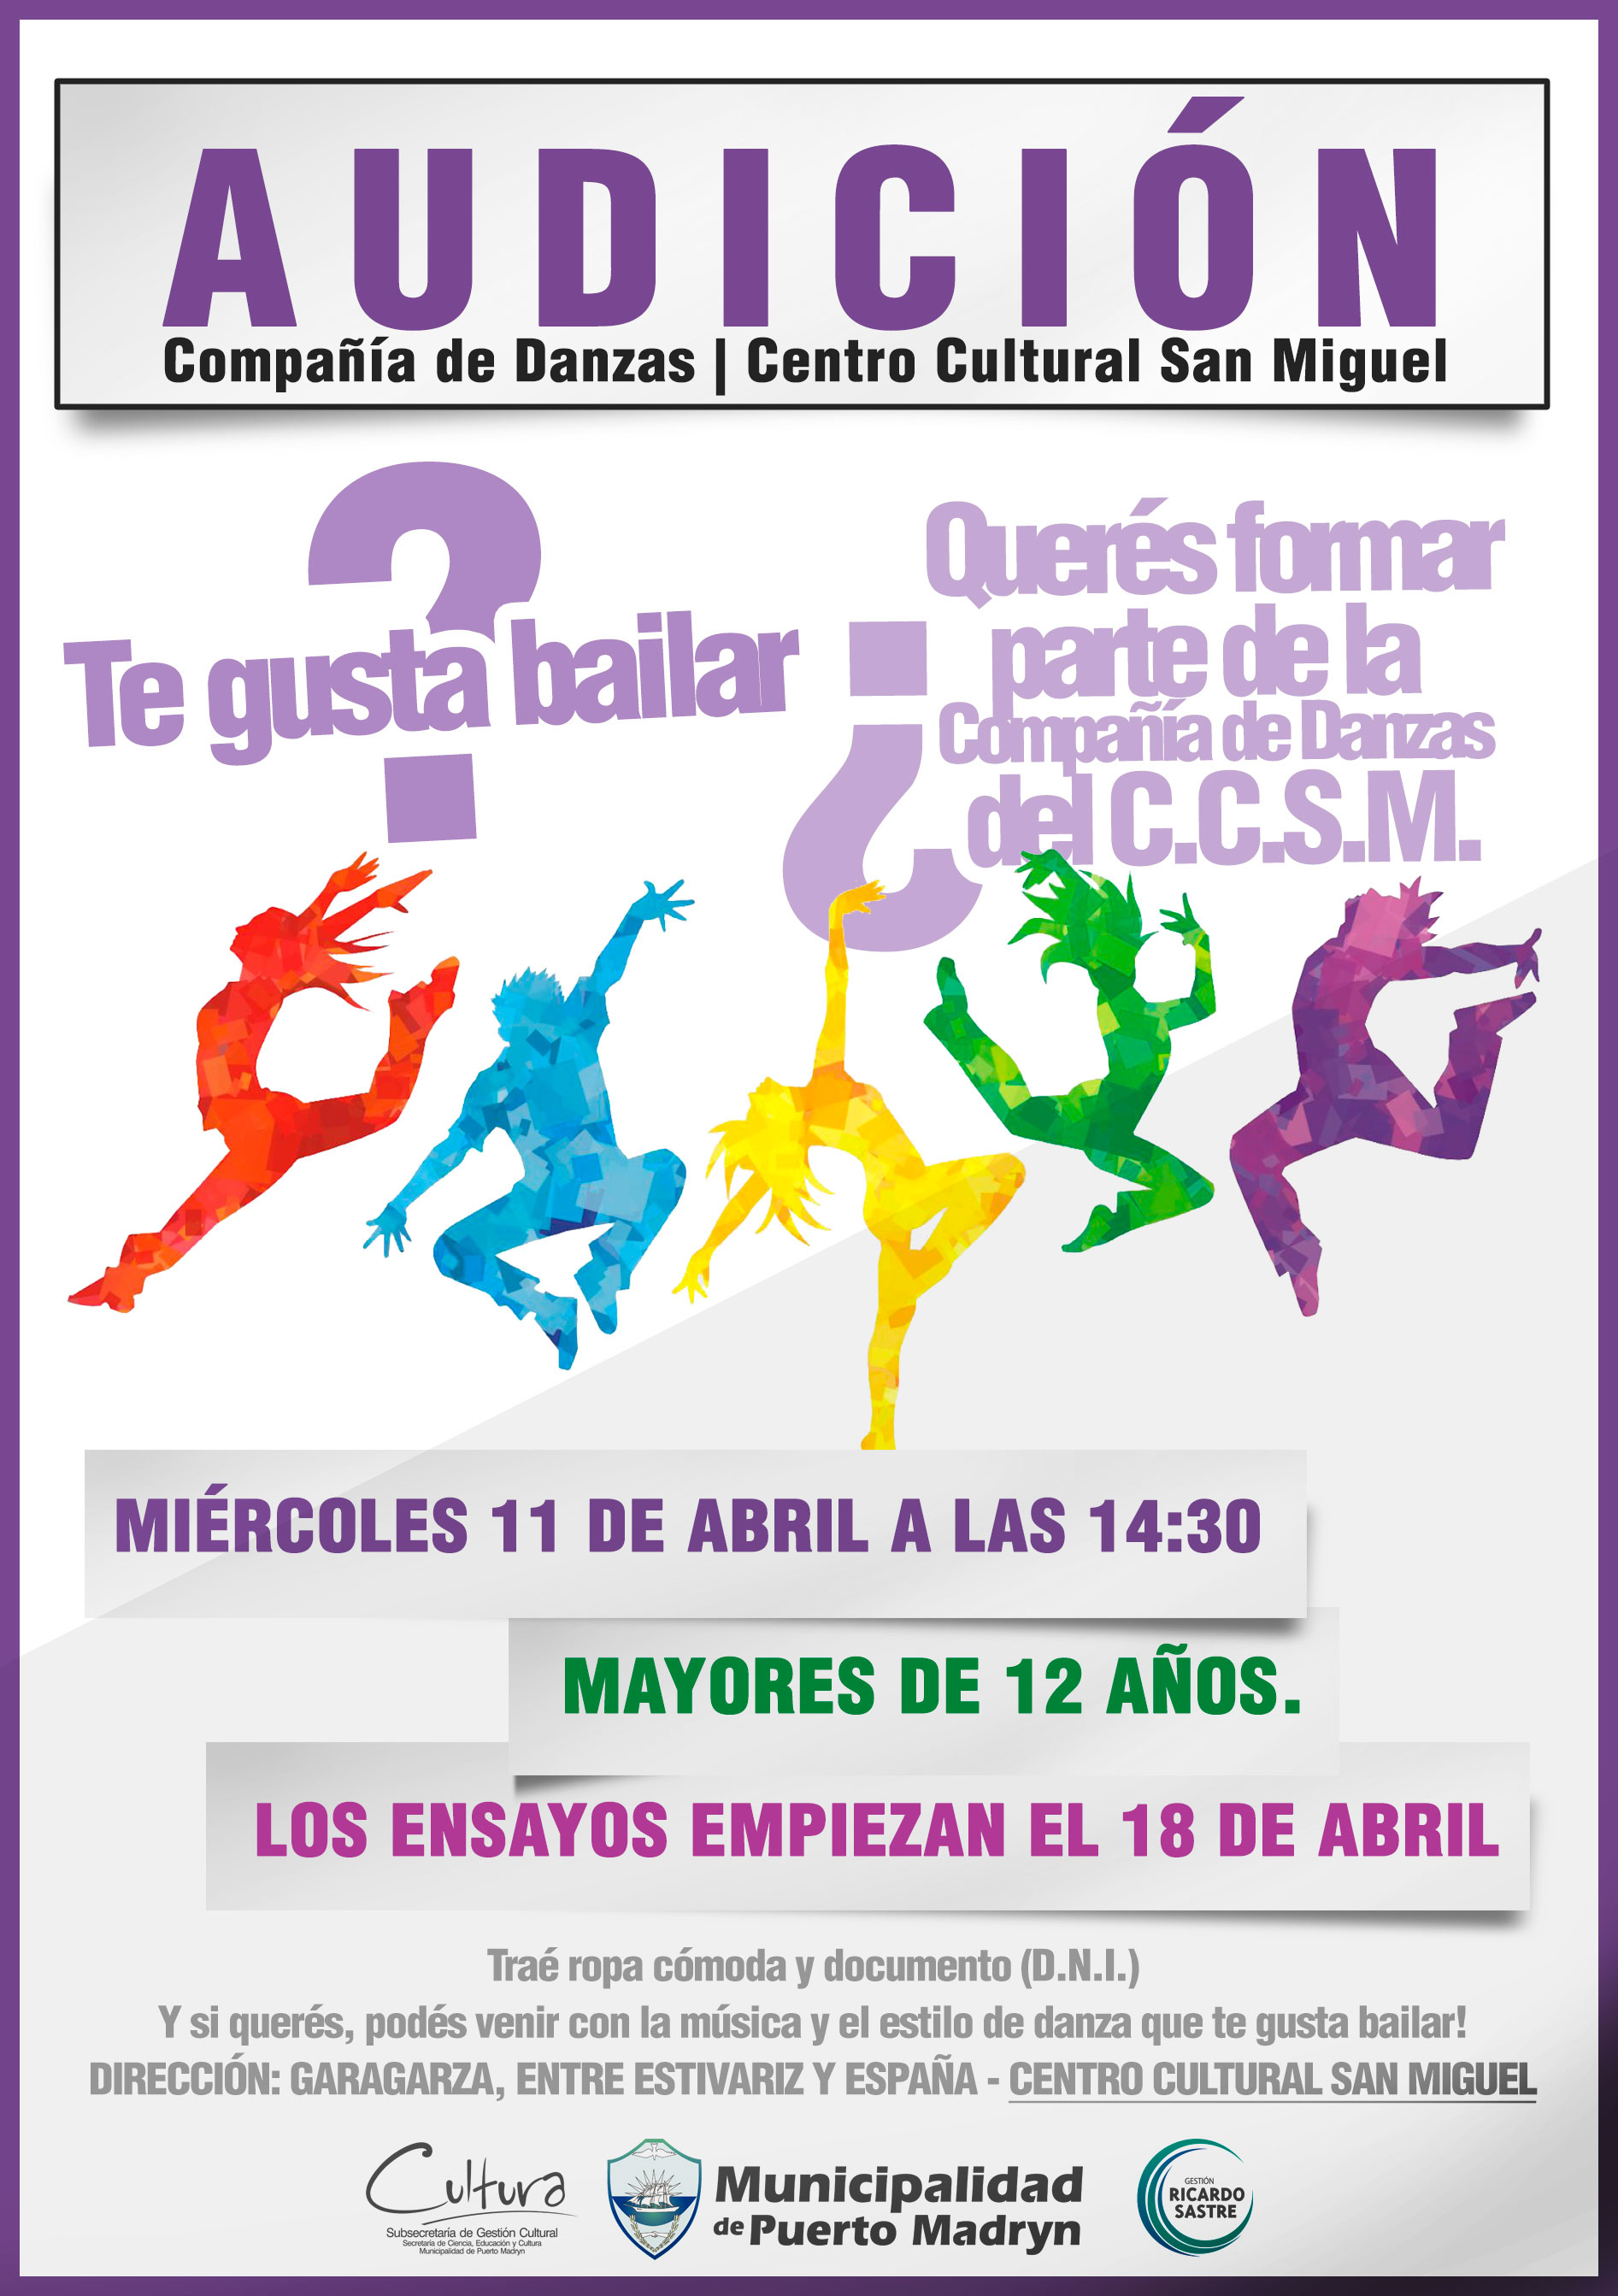 Compañía de Danza del Centro Cultural San Miguel